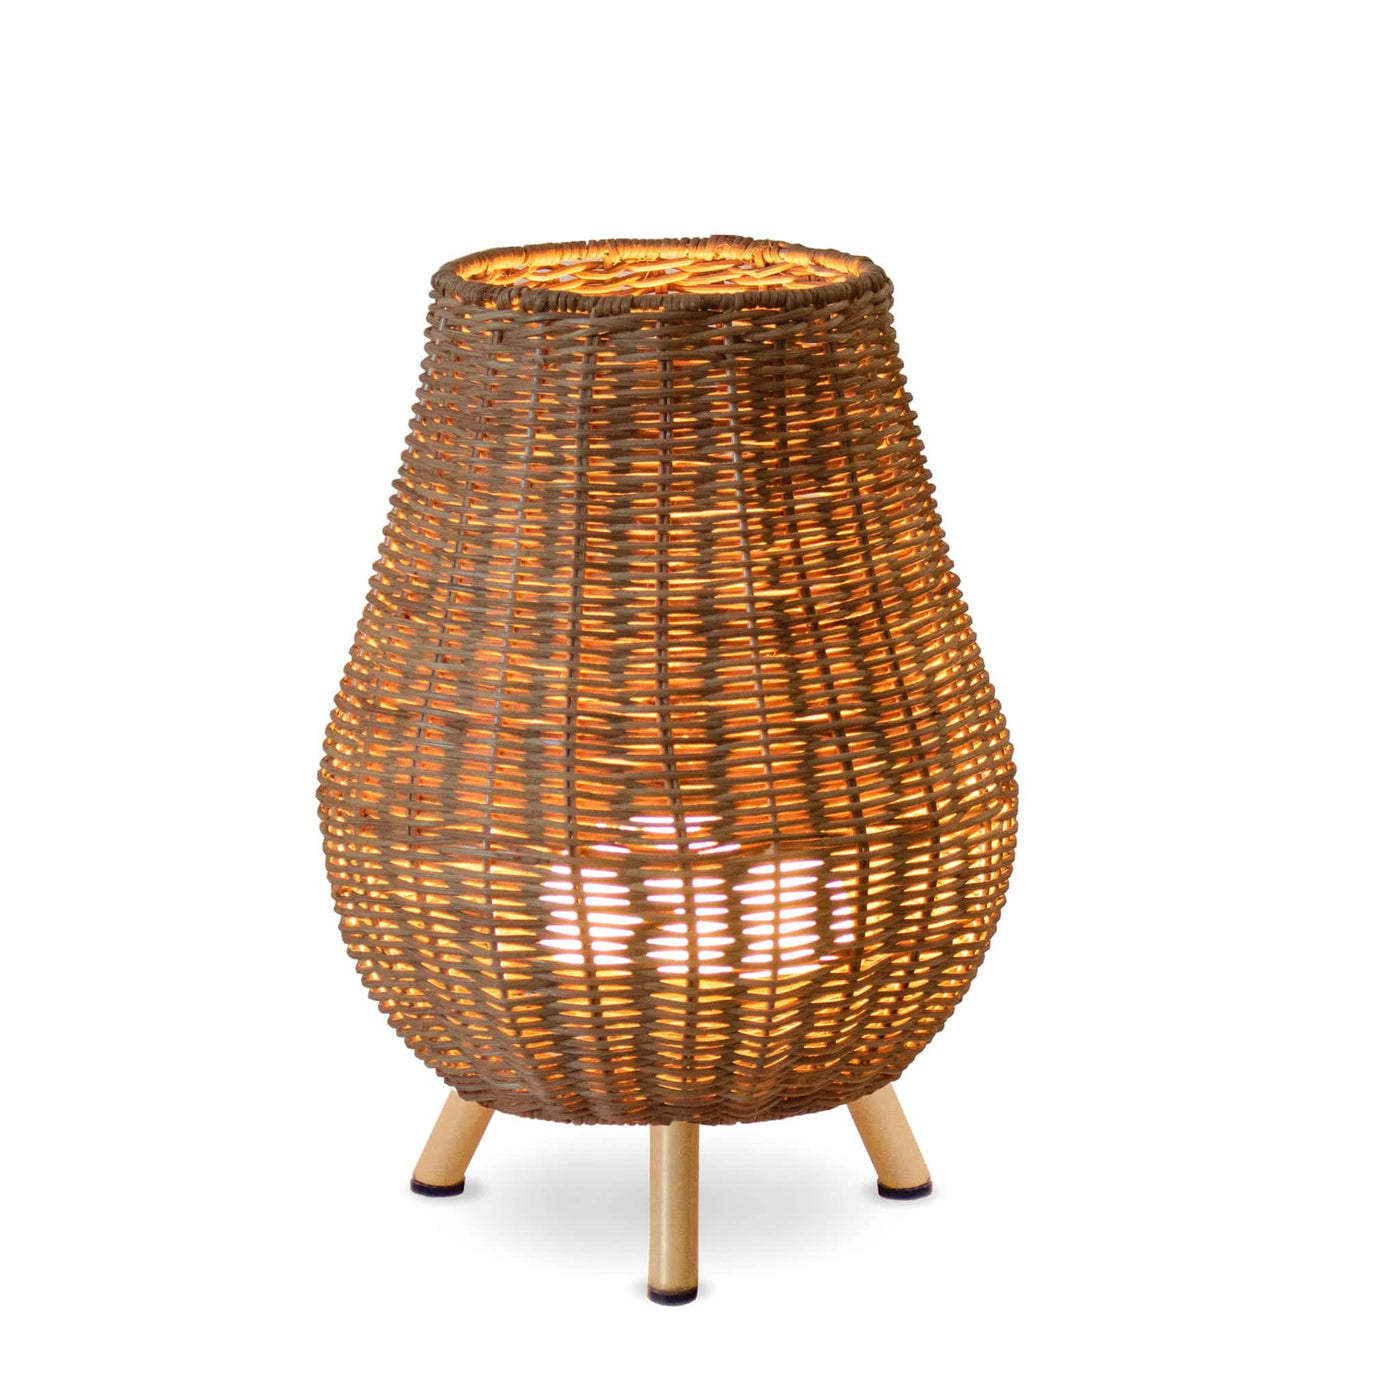 La lampe Saona de Newgarden, sans fil et fabriquée en fibres naturelles, illumine vos espaces intérieurs et extérieurs avec une touche authentique et chaleureuse. Intérieur et extérieur..